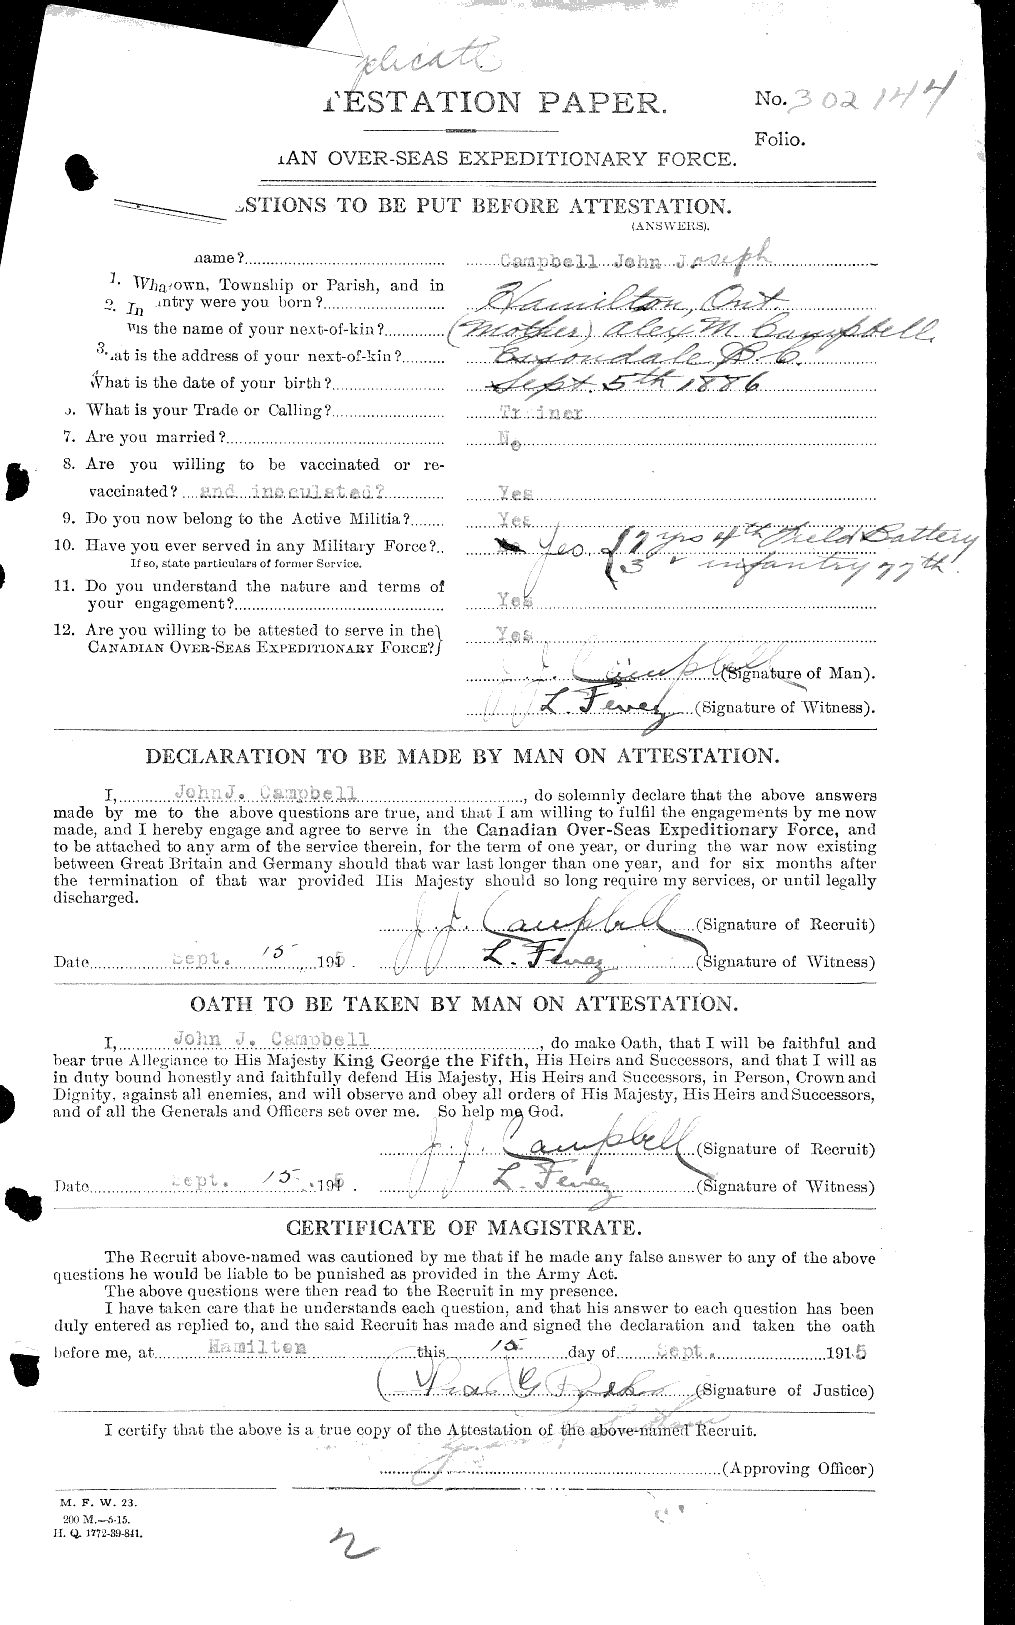 Dossiers du Personnel de la Première Guerre mondiale - CEC 008550a